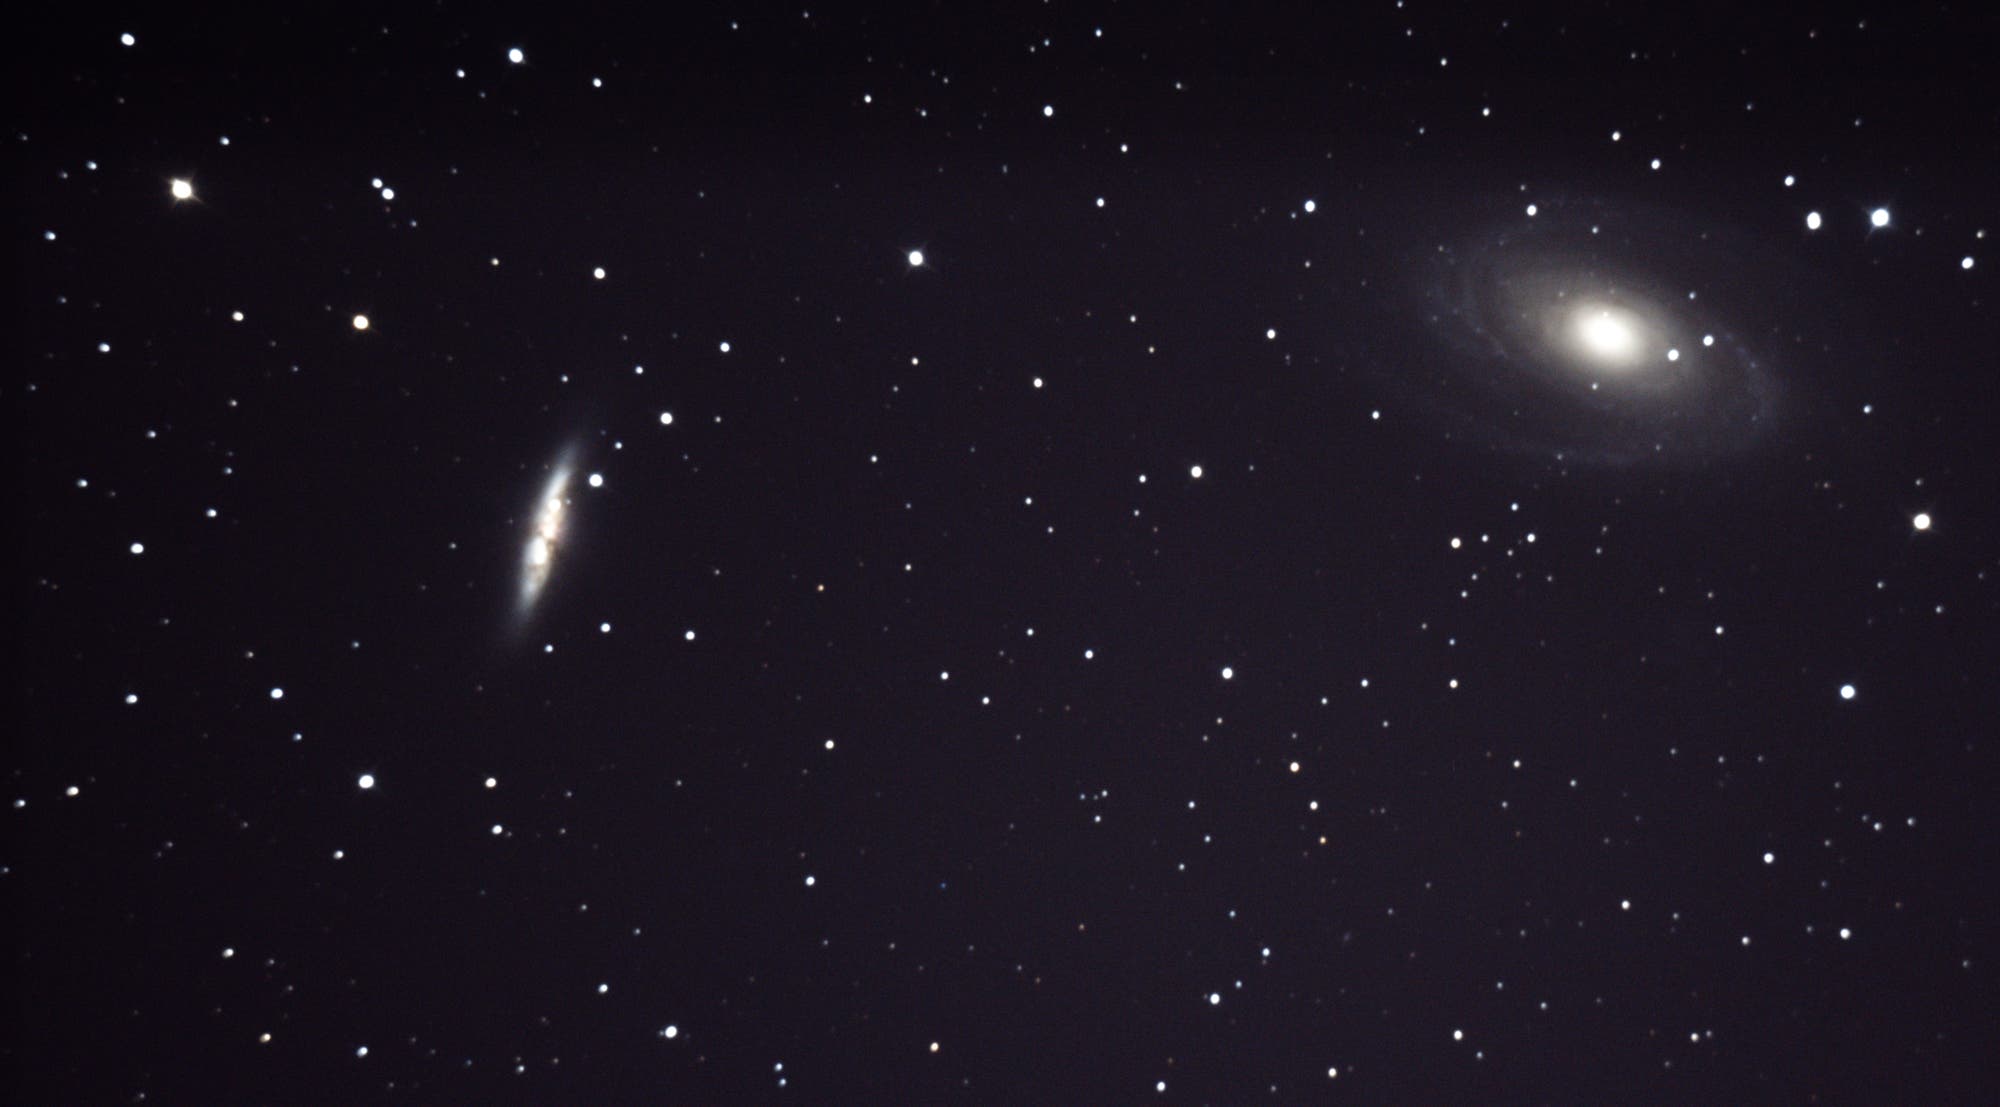 Supernova in M 82